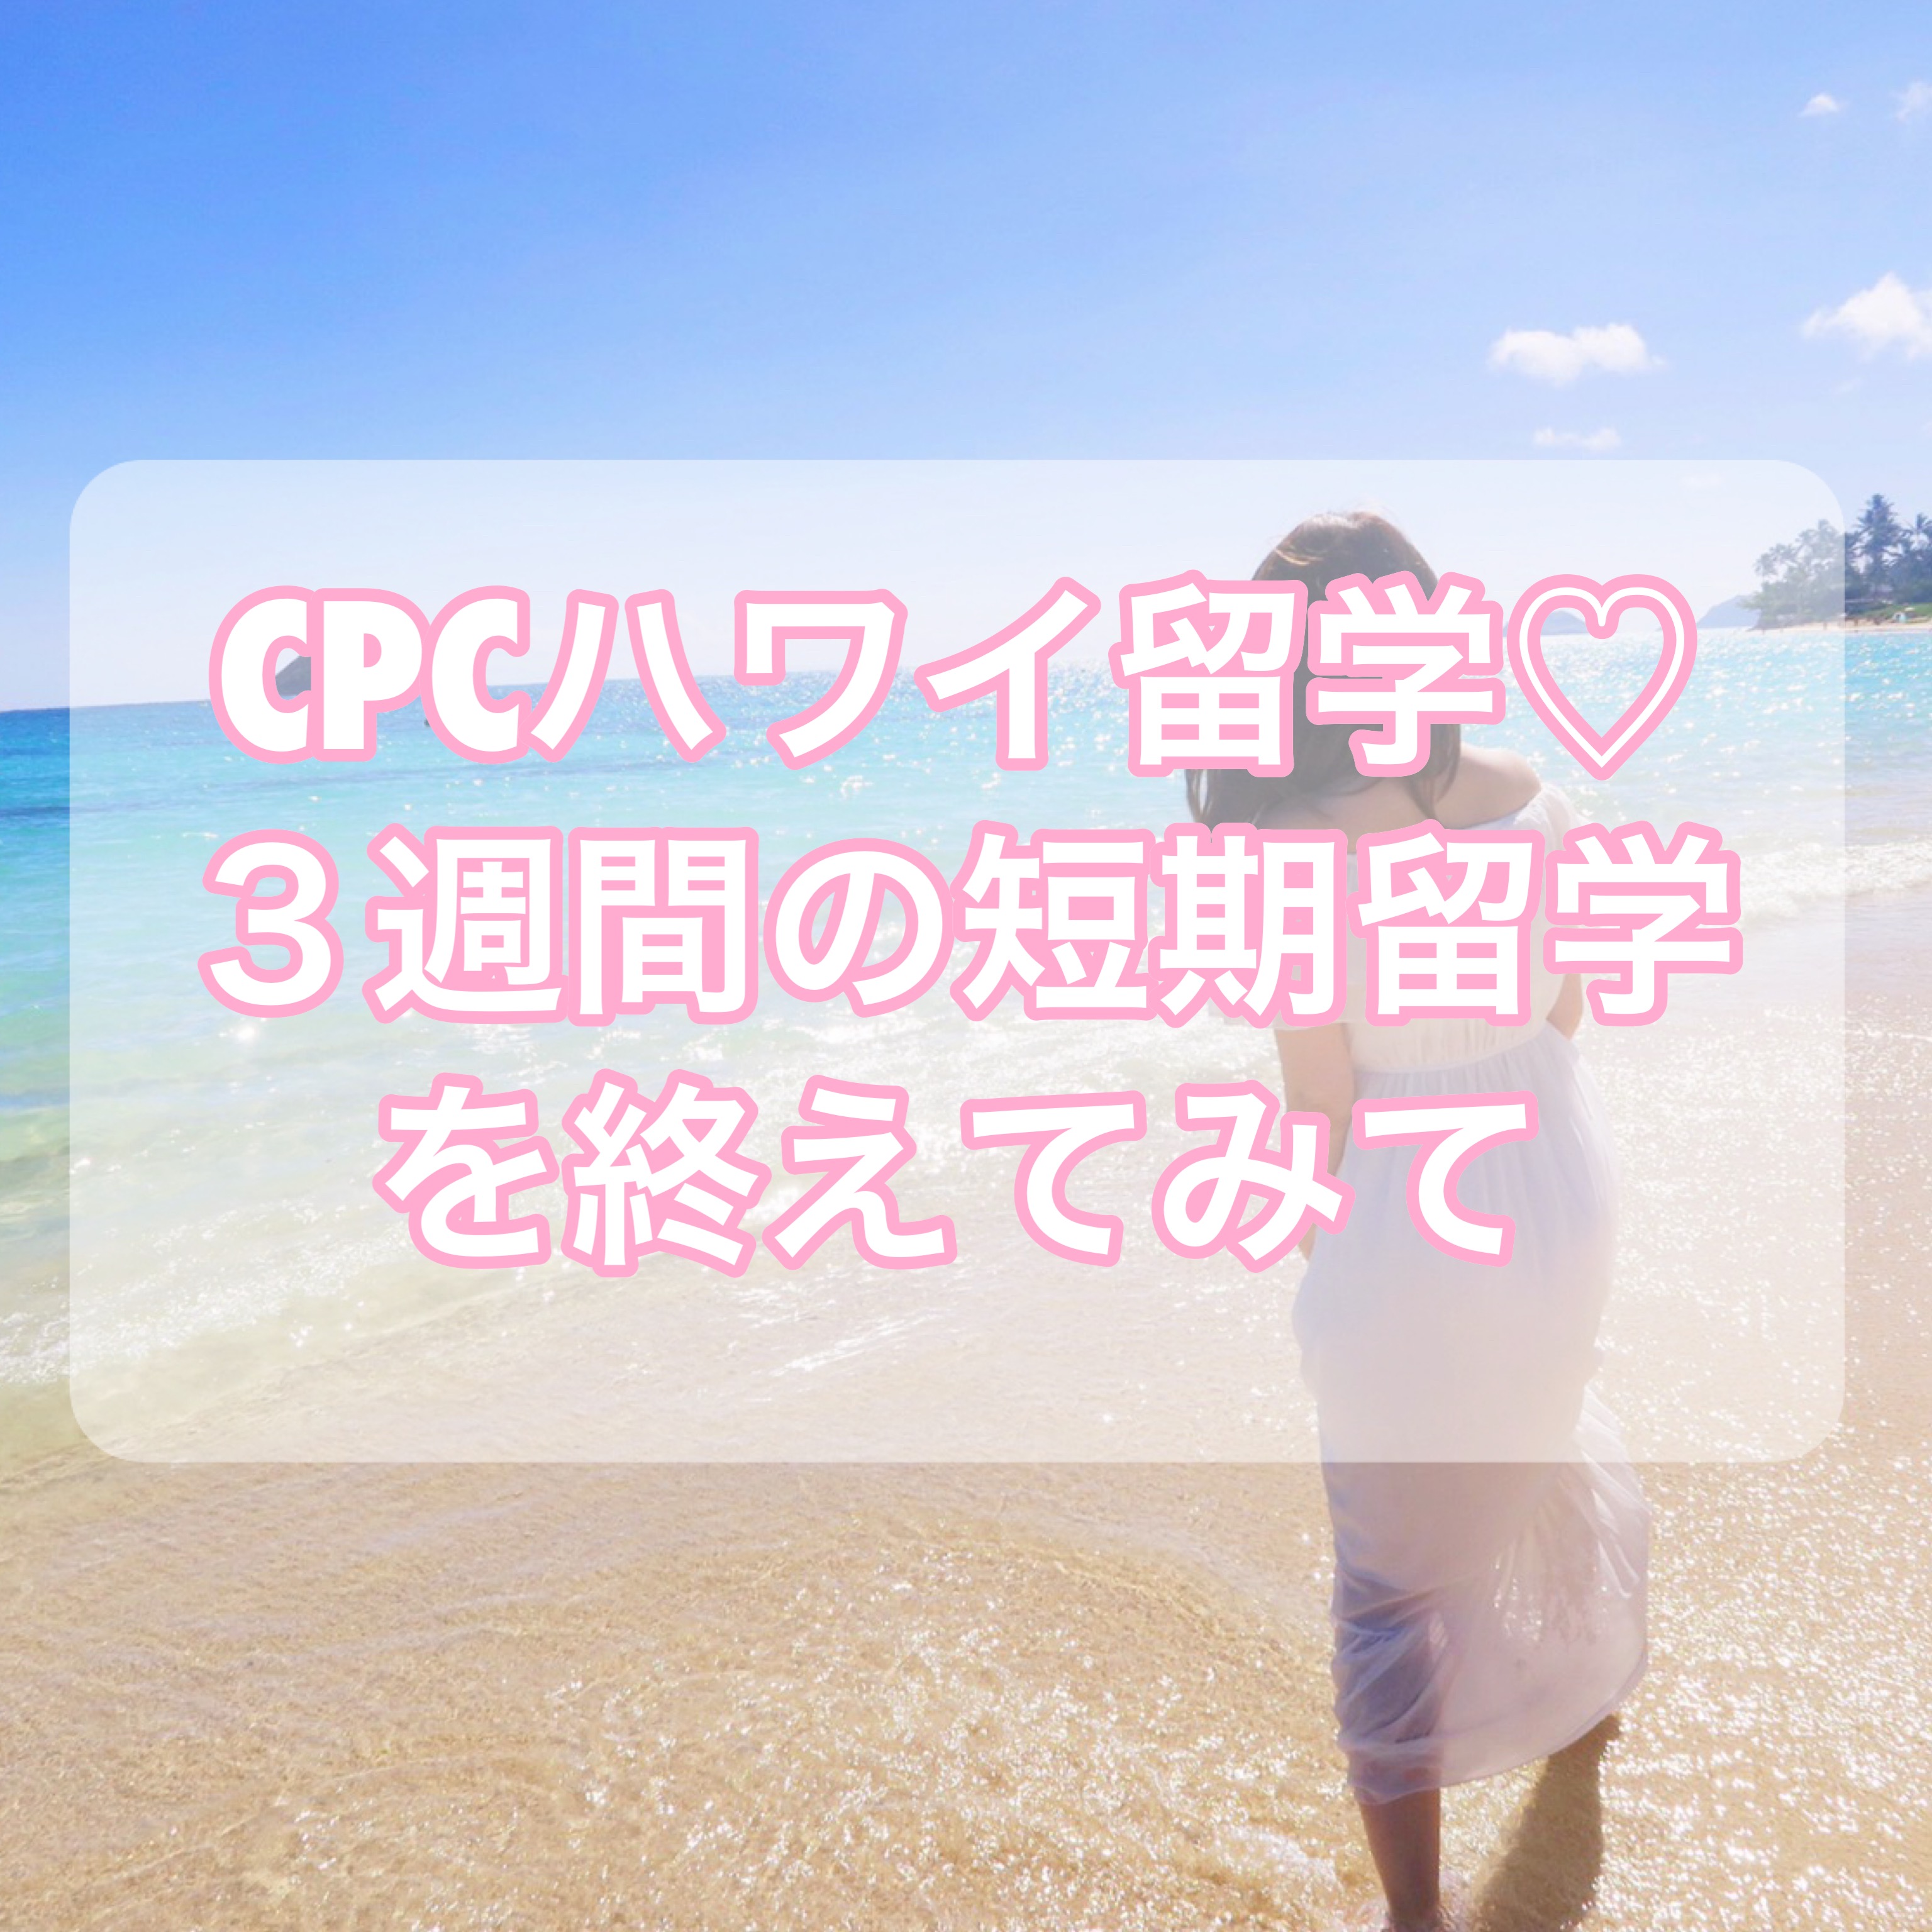 【CPCハワイ留学】3週間の短期留学を終えてみて【英語力は？】